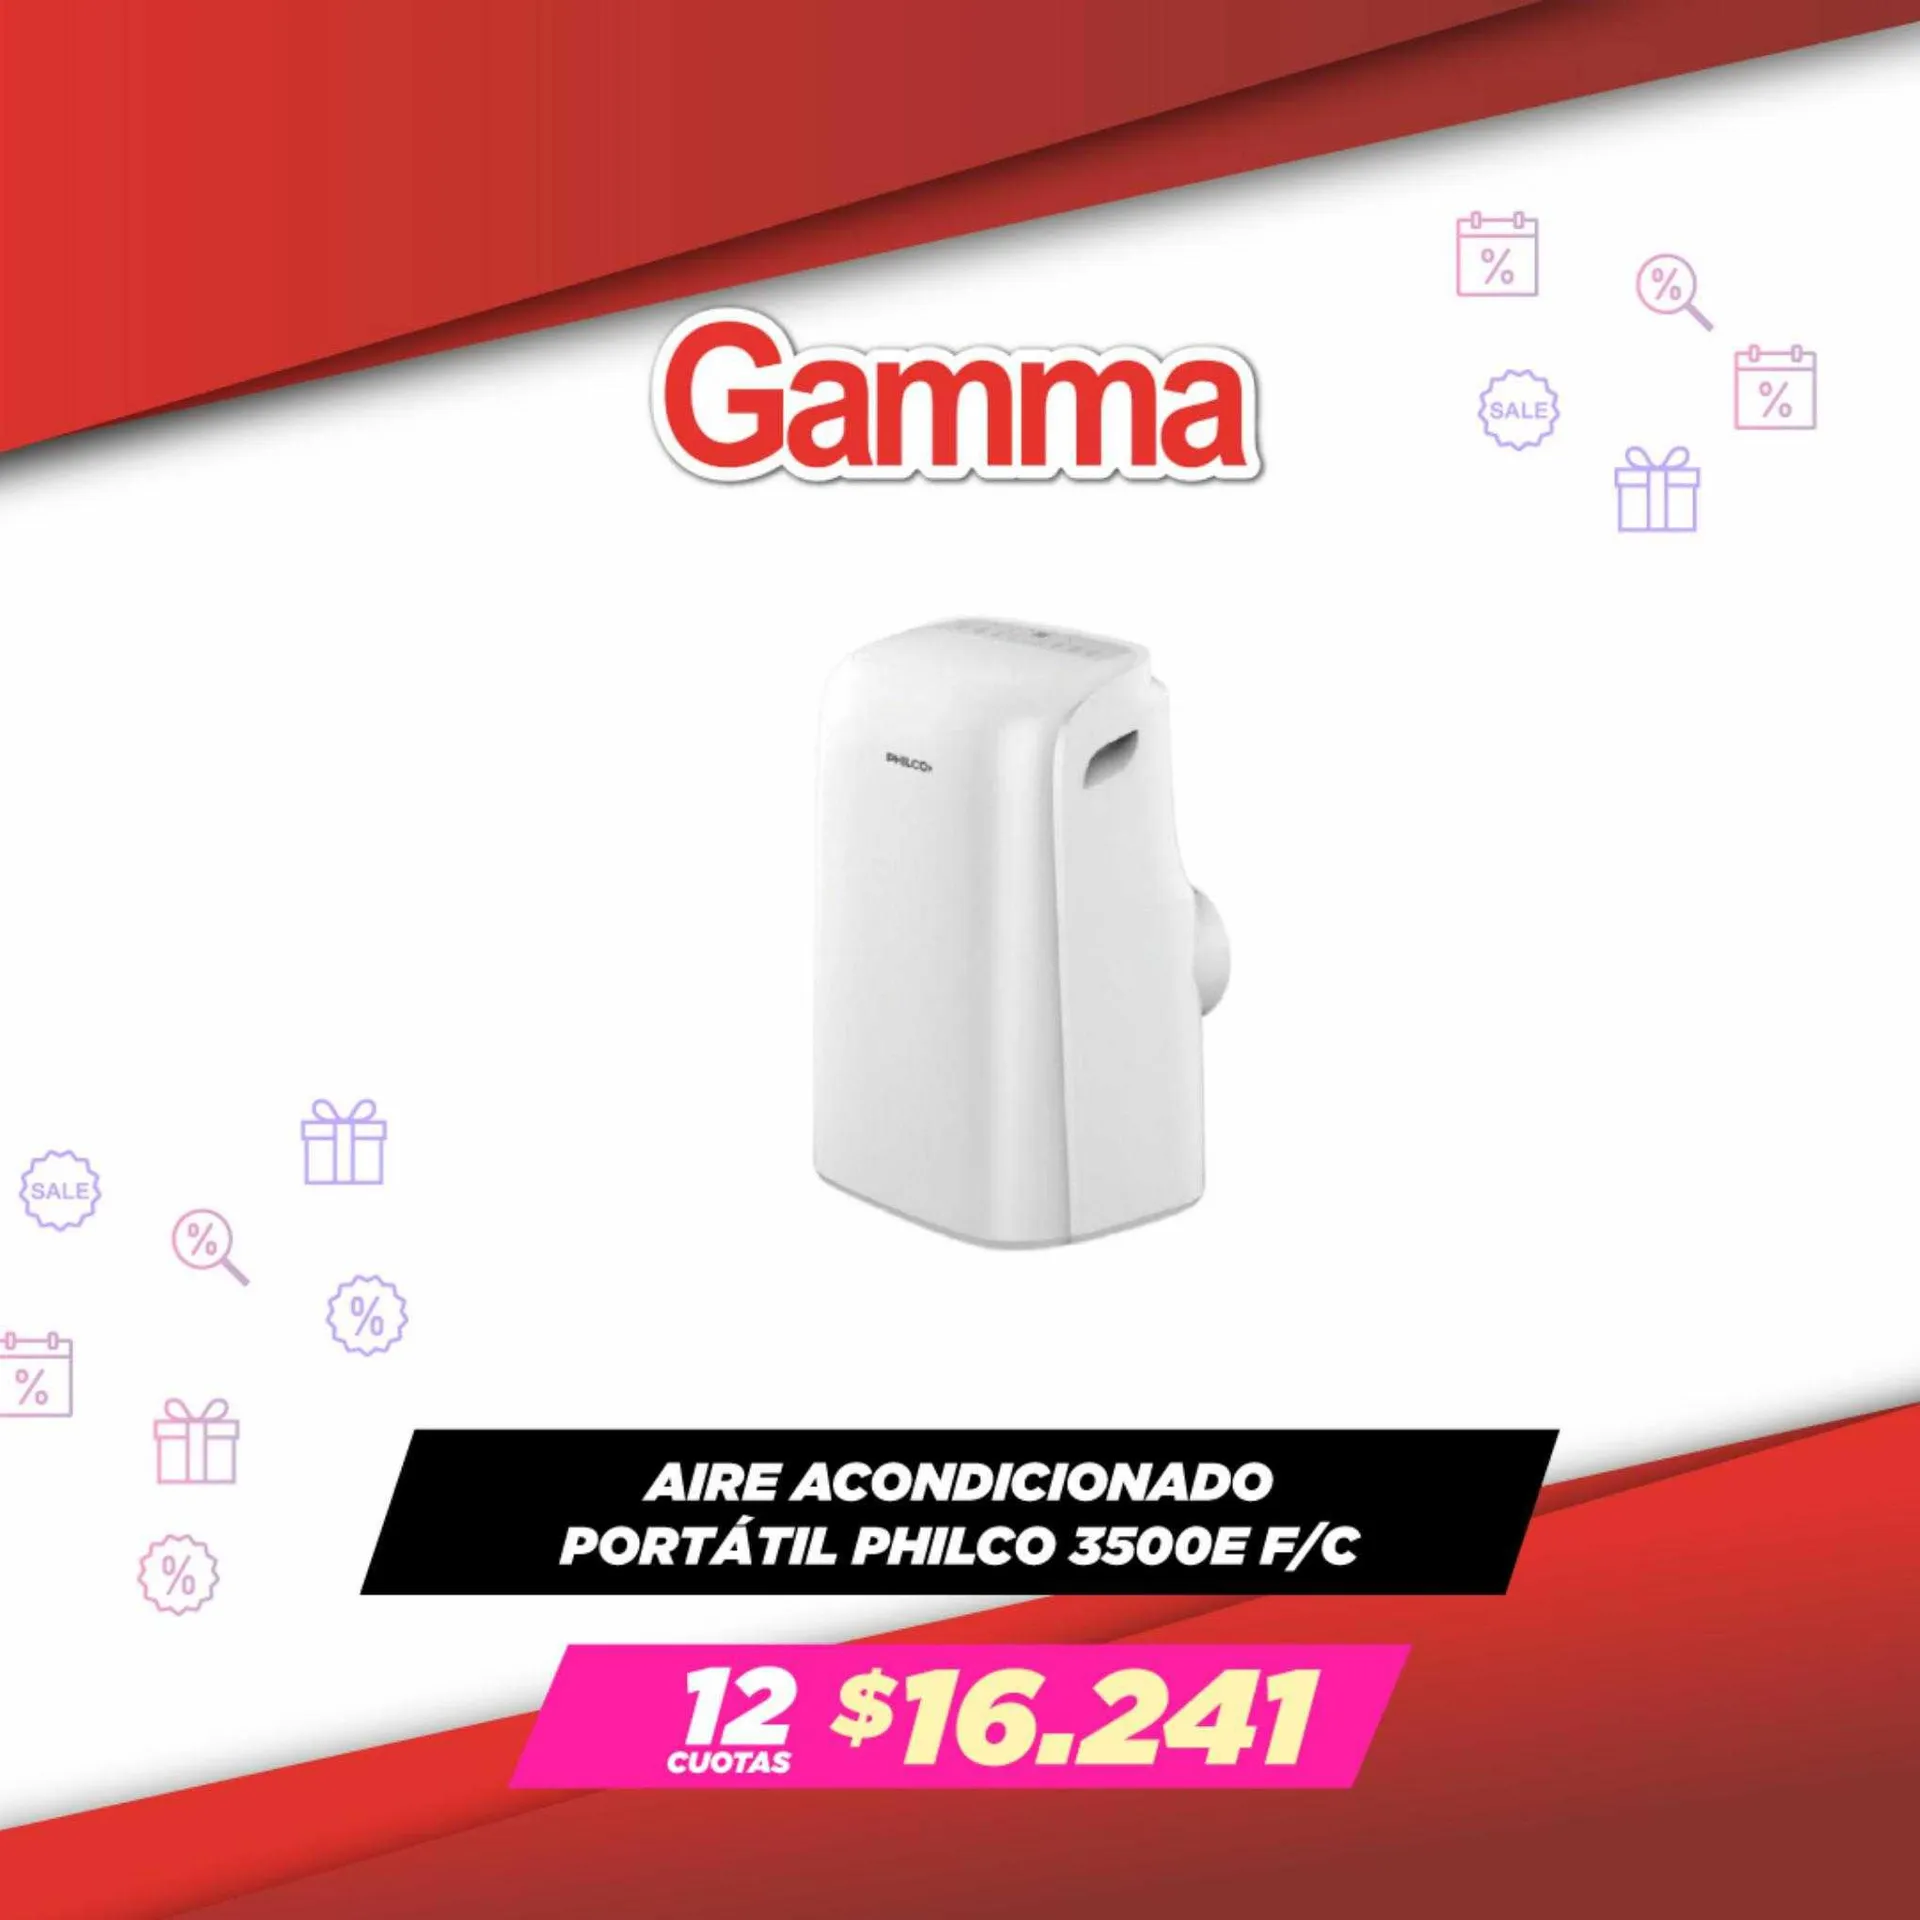 Catálogo Gamma - 2